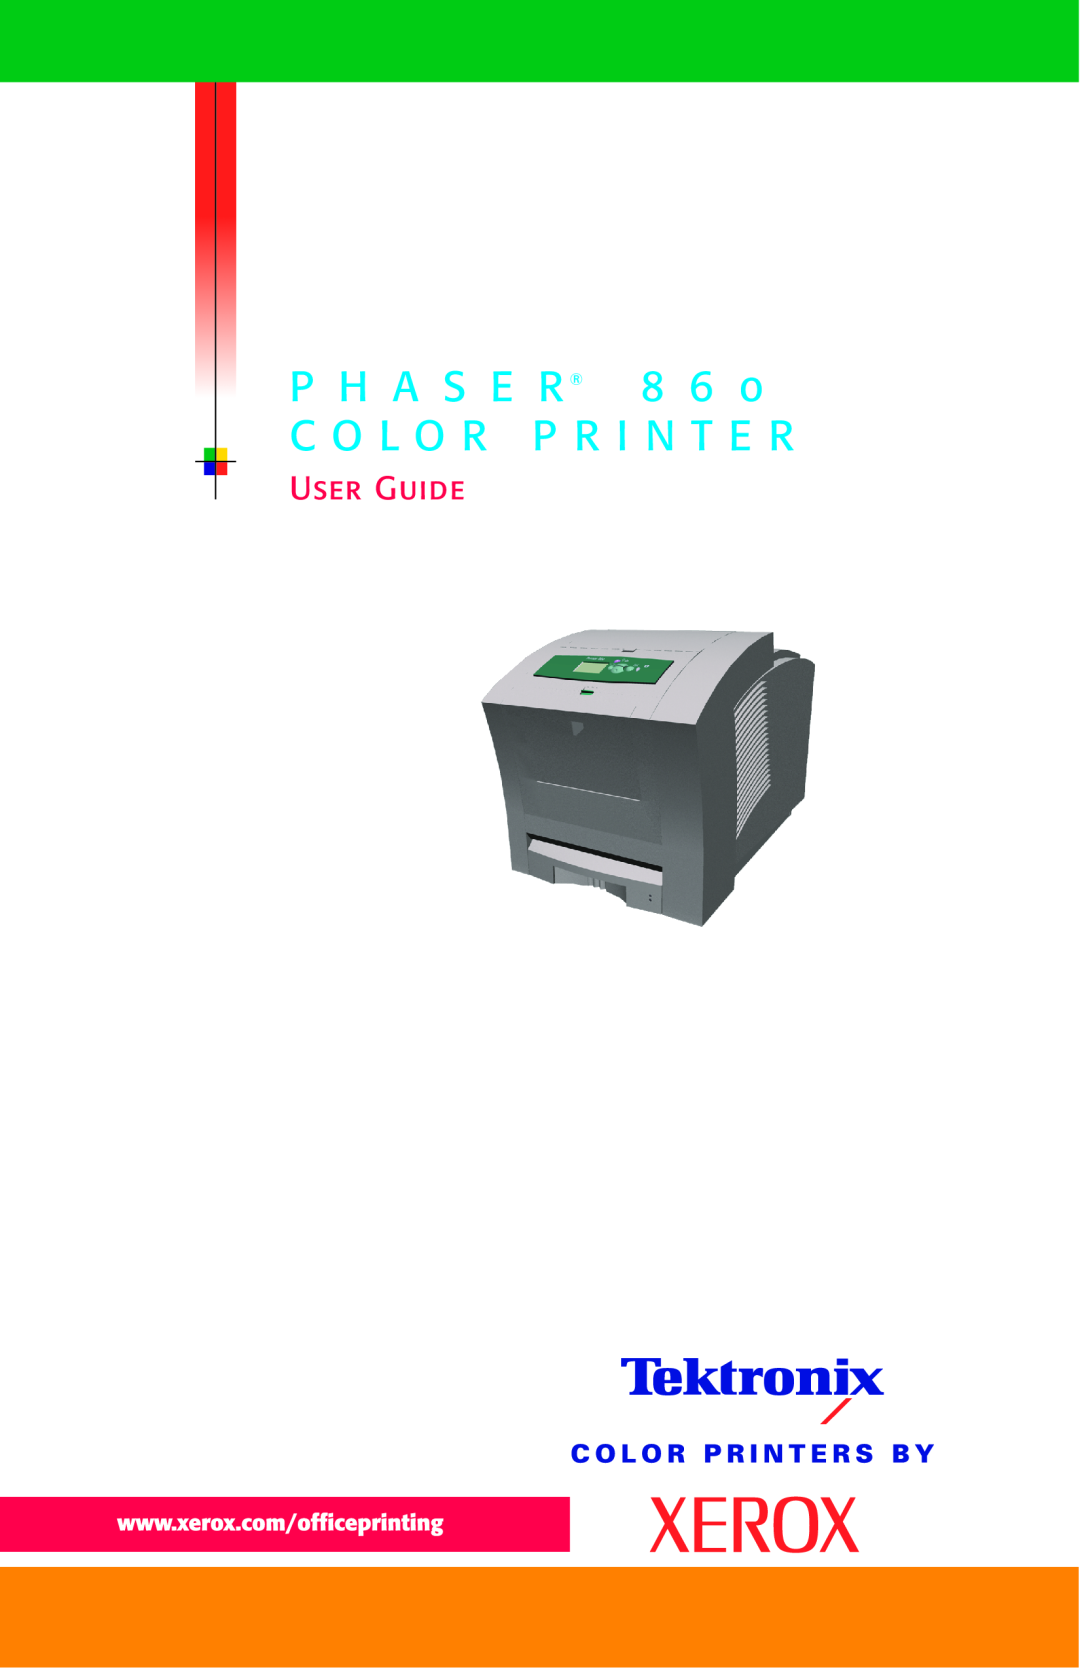 Xerox Phaser 860 manual P H A S E R 8 6 C O L O R P R I N T E R, User Guide 